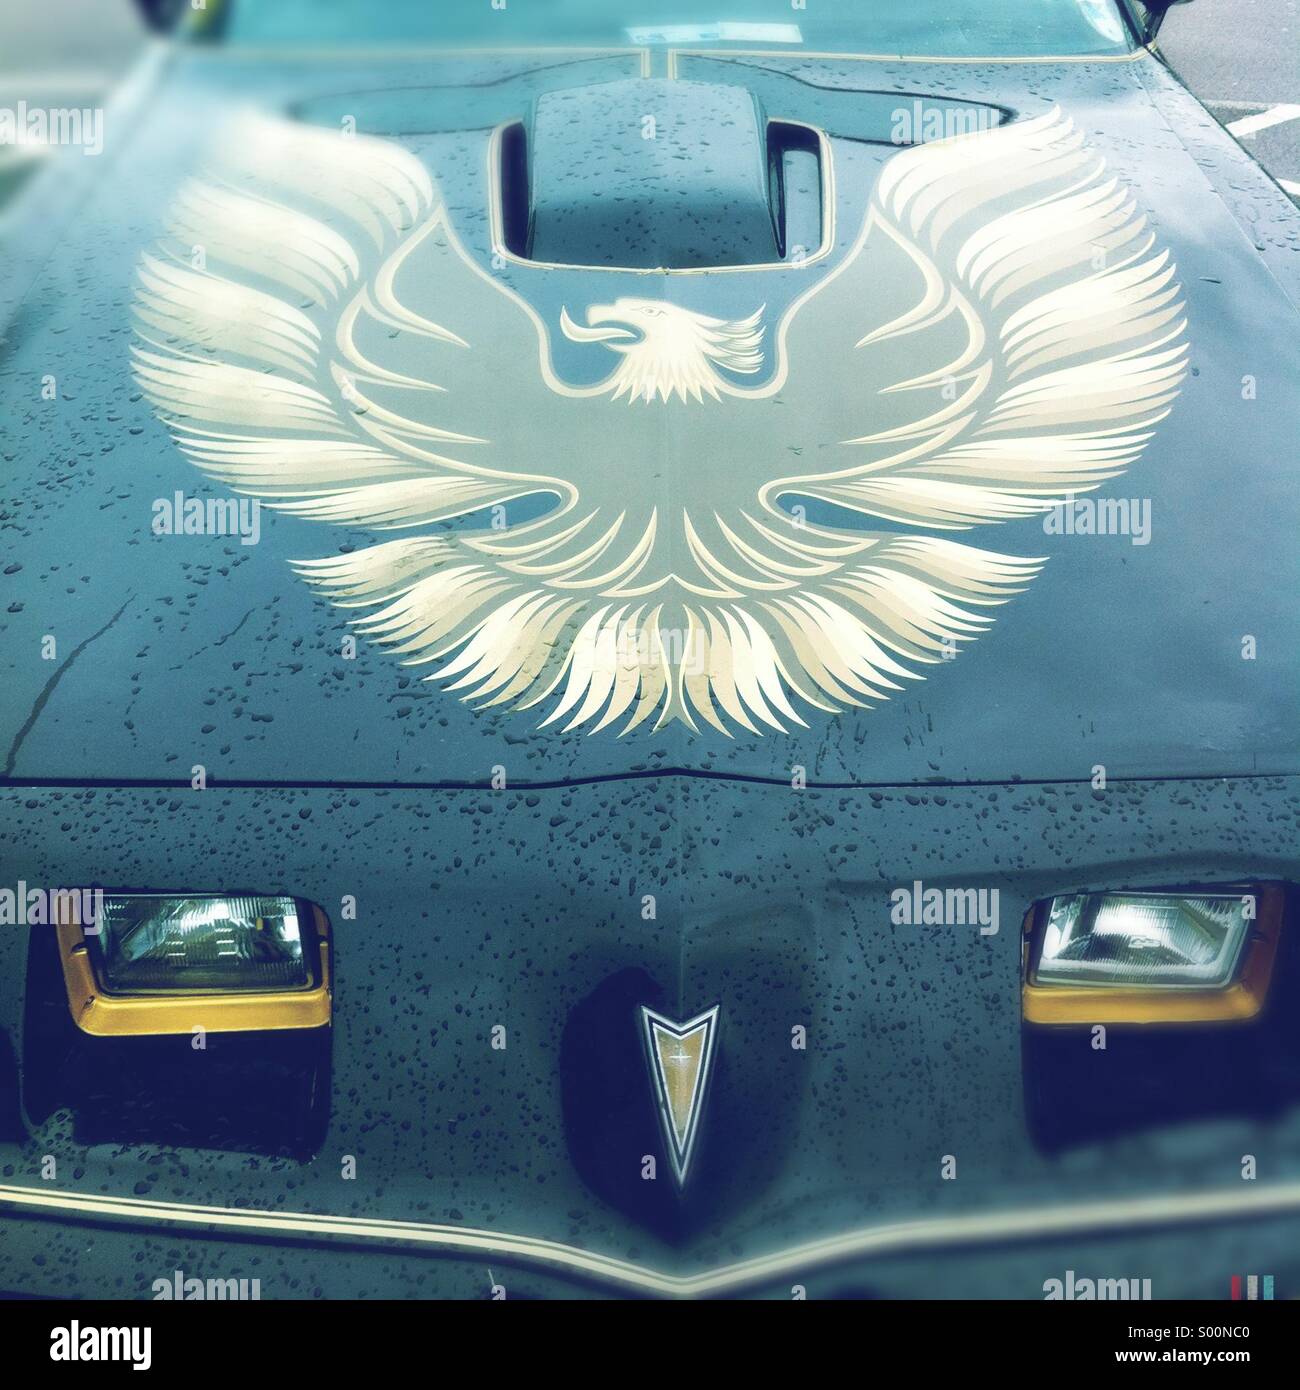 Bonnet detail showing an image of a Phoenix on a Pontiac Firebird Trans Am car. Stock Photo